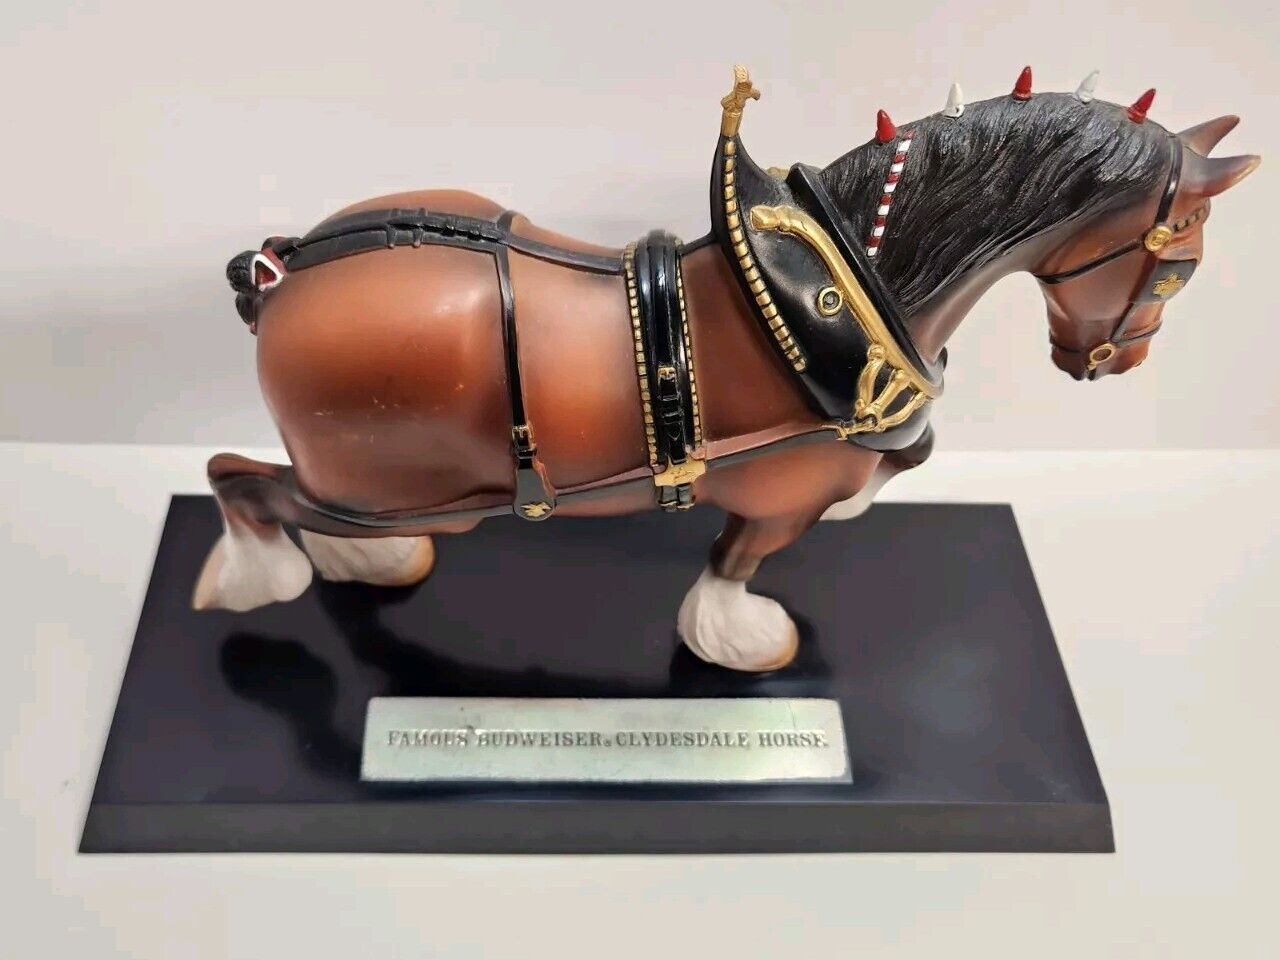 Vintage Budweiser Beer Clydesdales Horse Figurine Model On Base